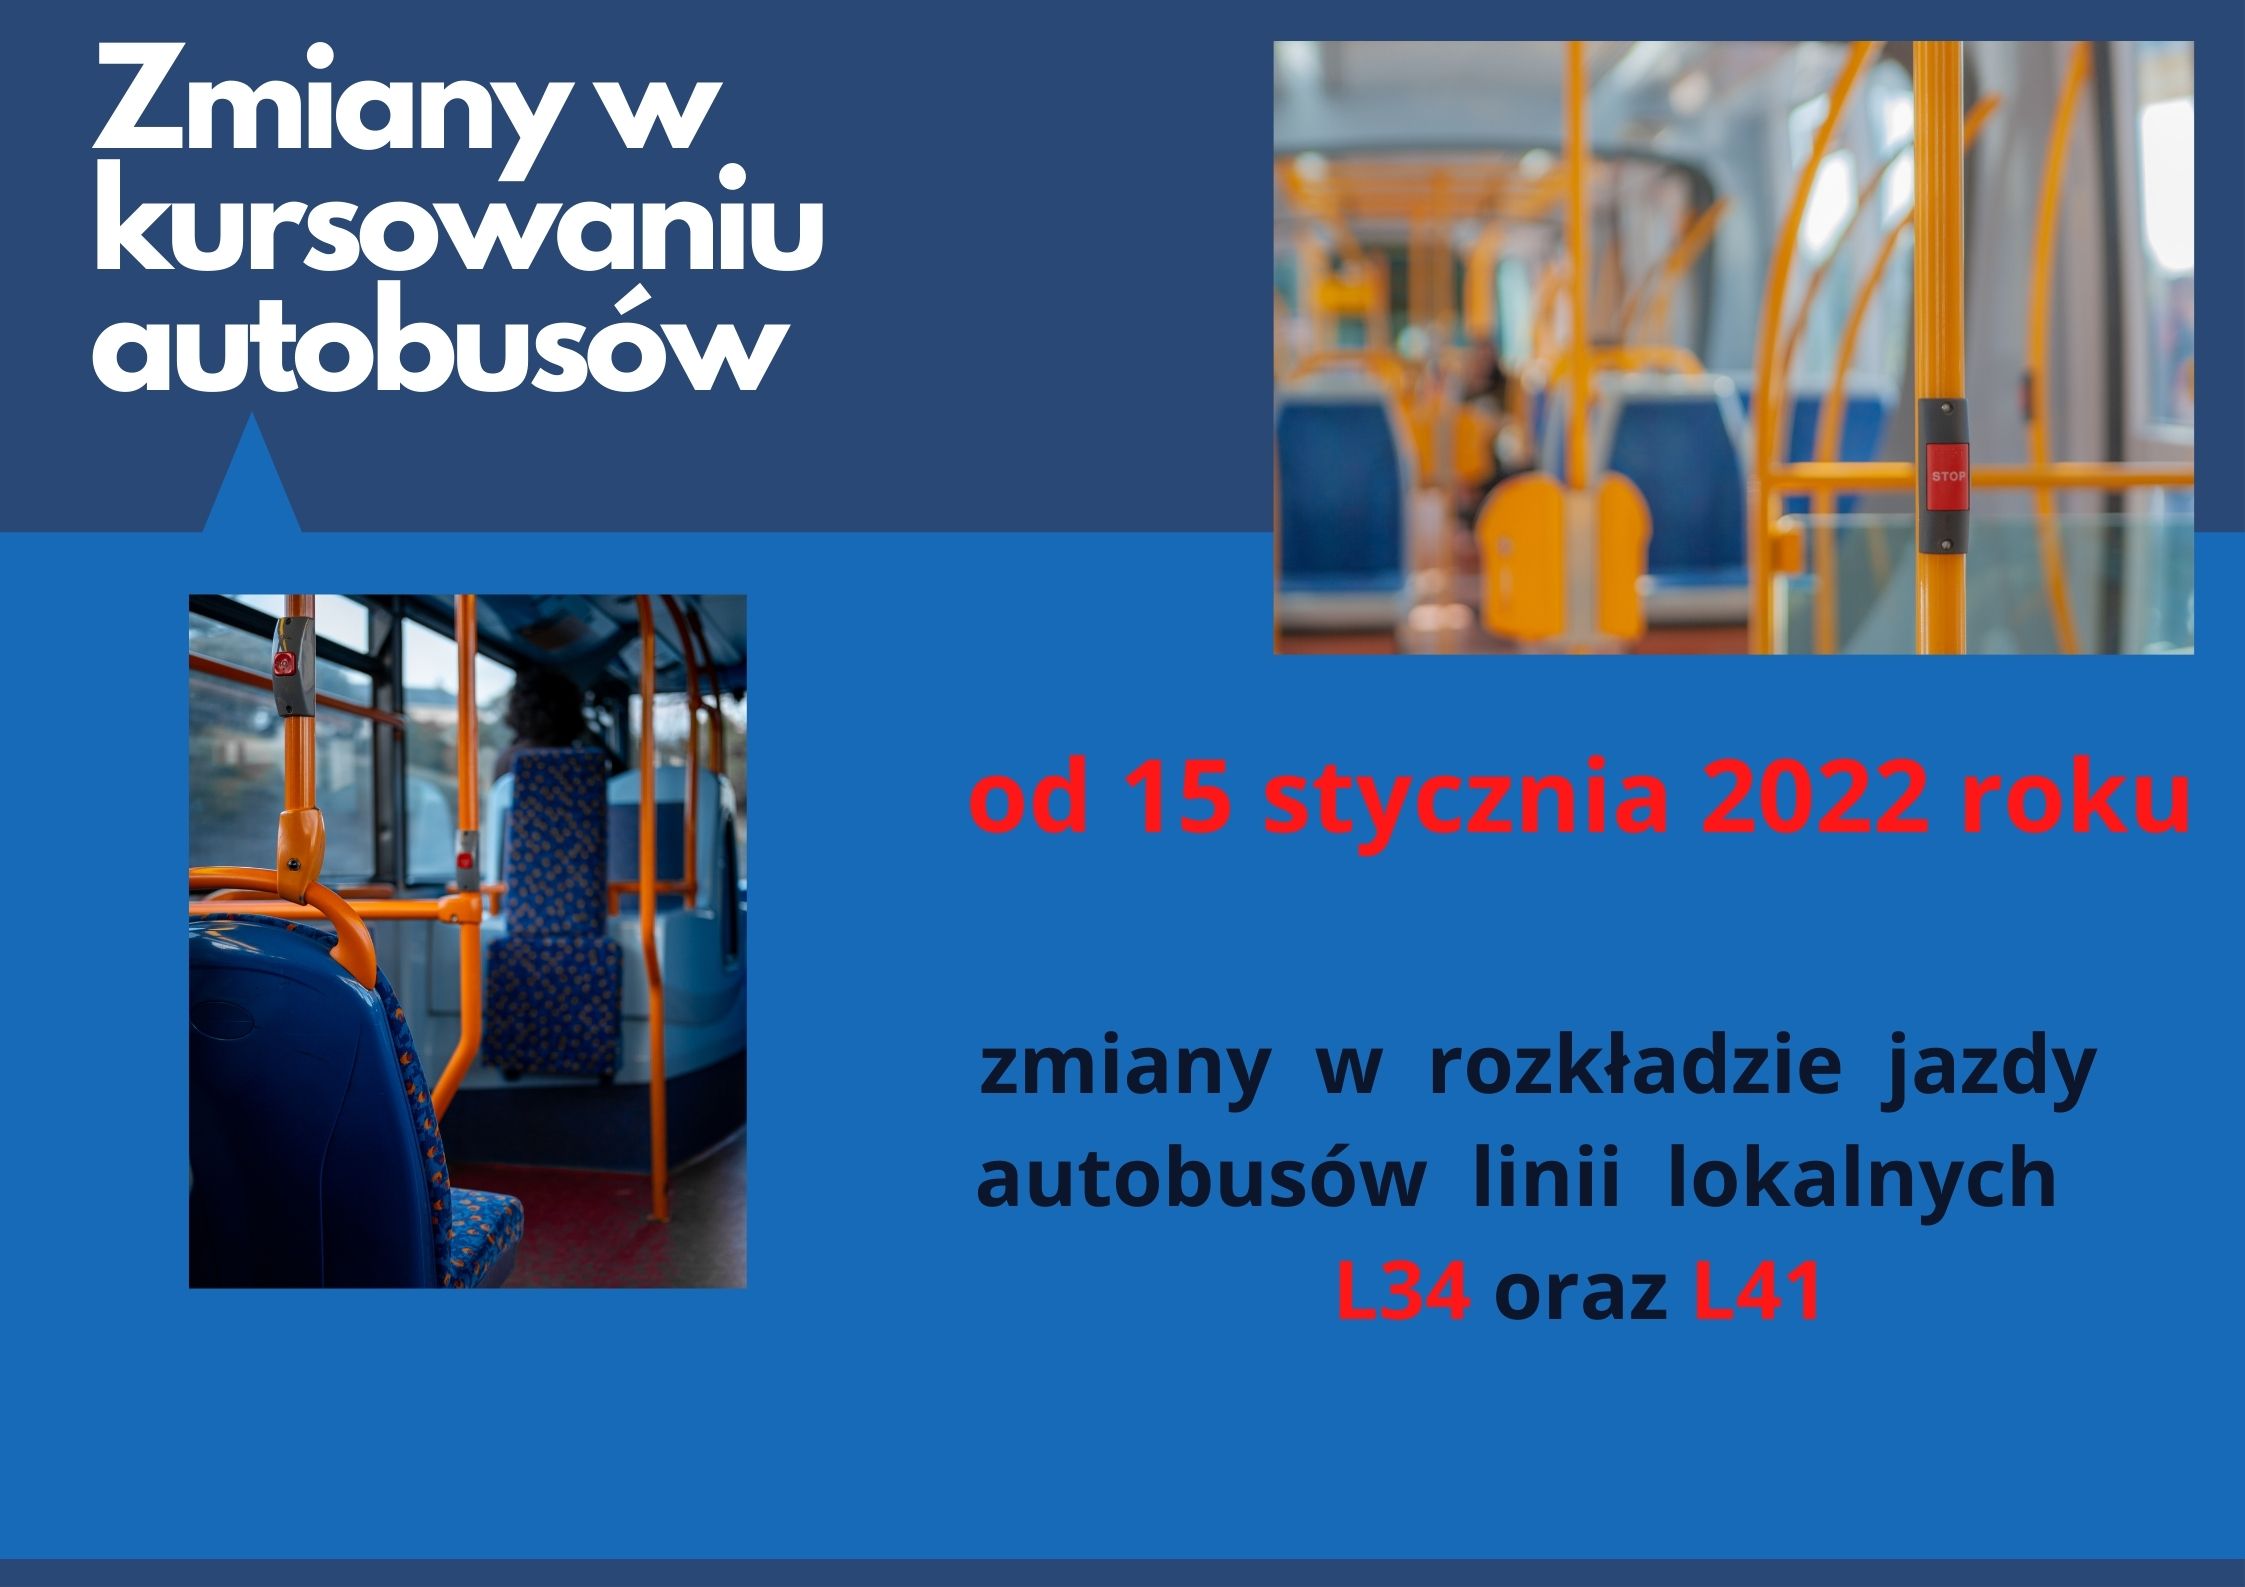 Infografika ze zdjęciem wnętrza autobusu oraz datami zmian kursów linii lokalnych